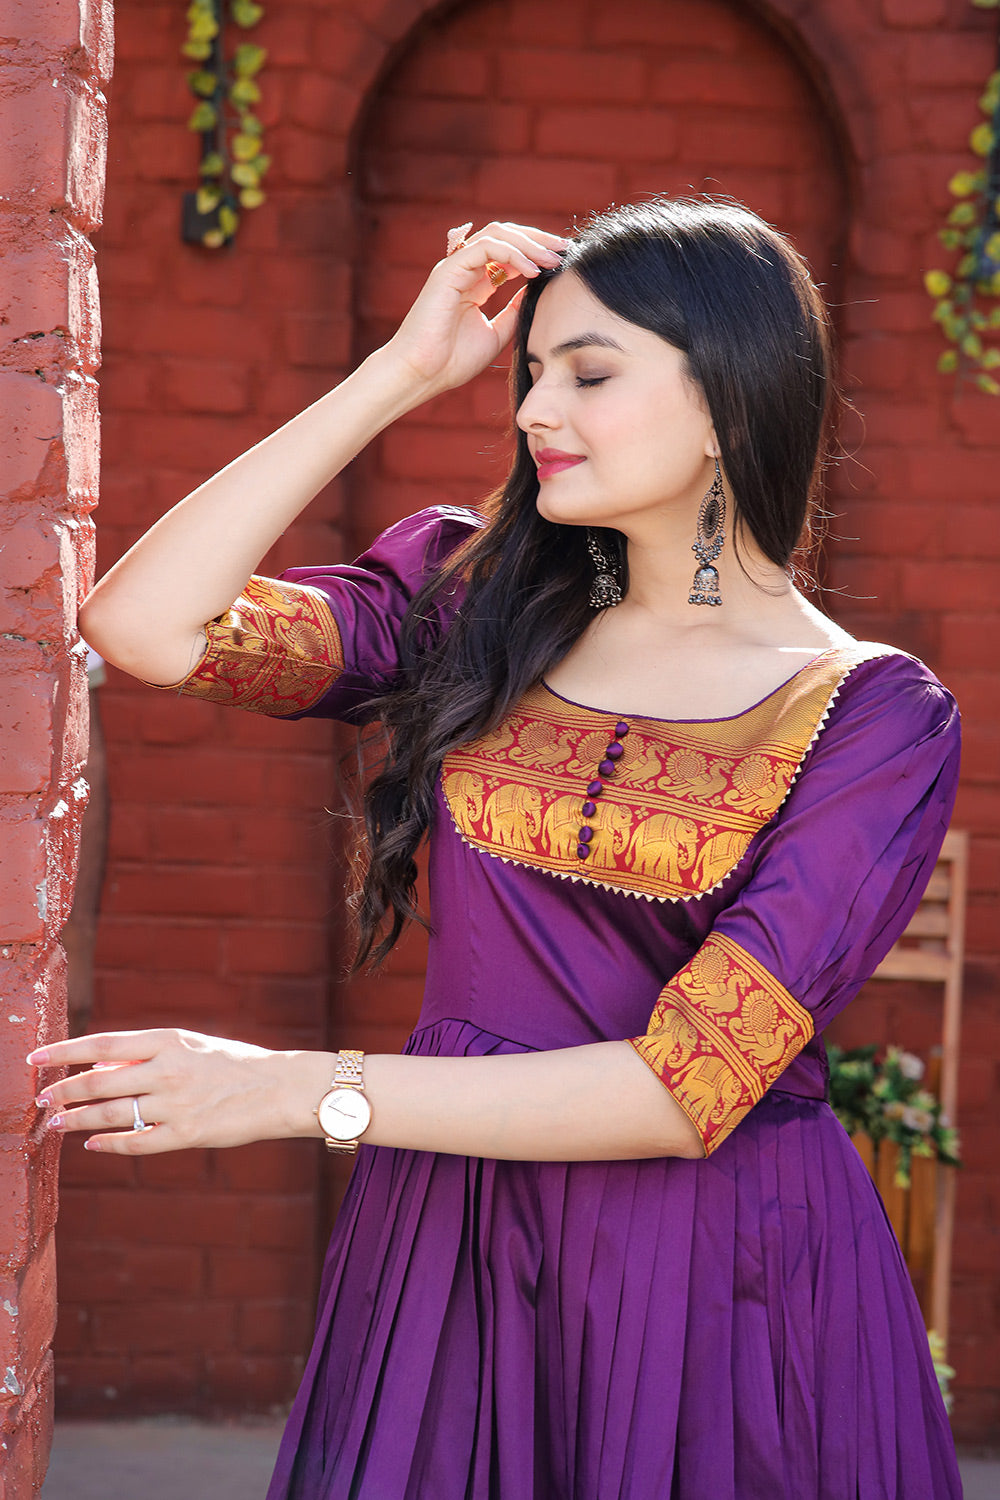 Designer Purple Silk Jequard Weaving Work Gown